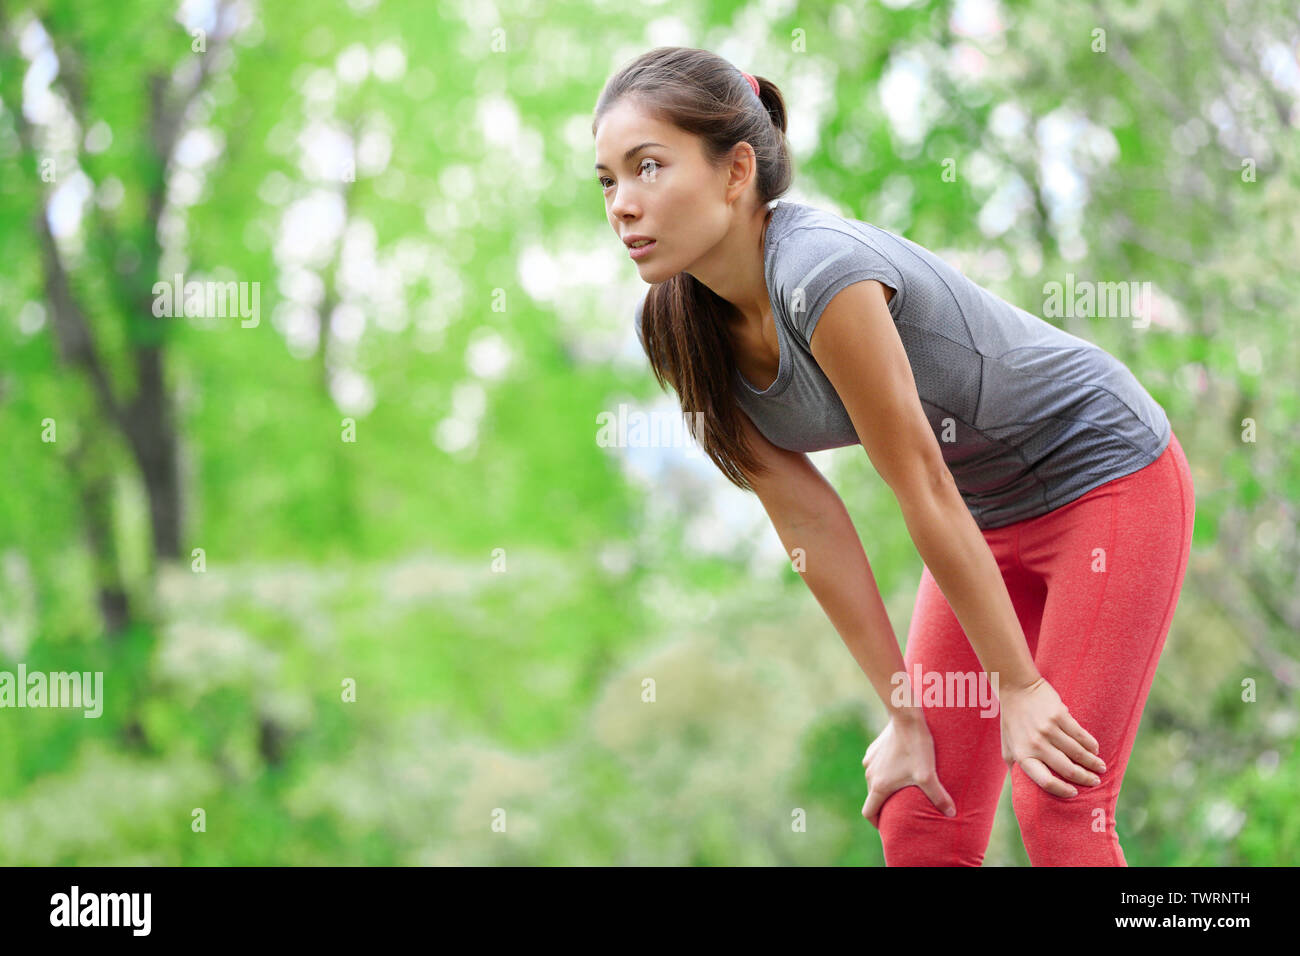 Mujer Asiática atleta runner descansando después de correr y entrenamiento de jogging al aire libre en el bosque. Cansado agotado hermoso gimnasio deportivo modelo de vivir el estilo de vida activo y saludable. Mestizos caucásicos de Asia. Foto de stock